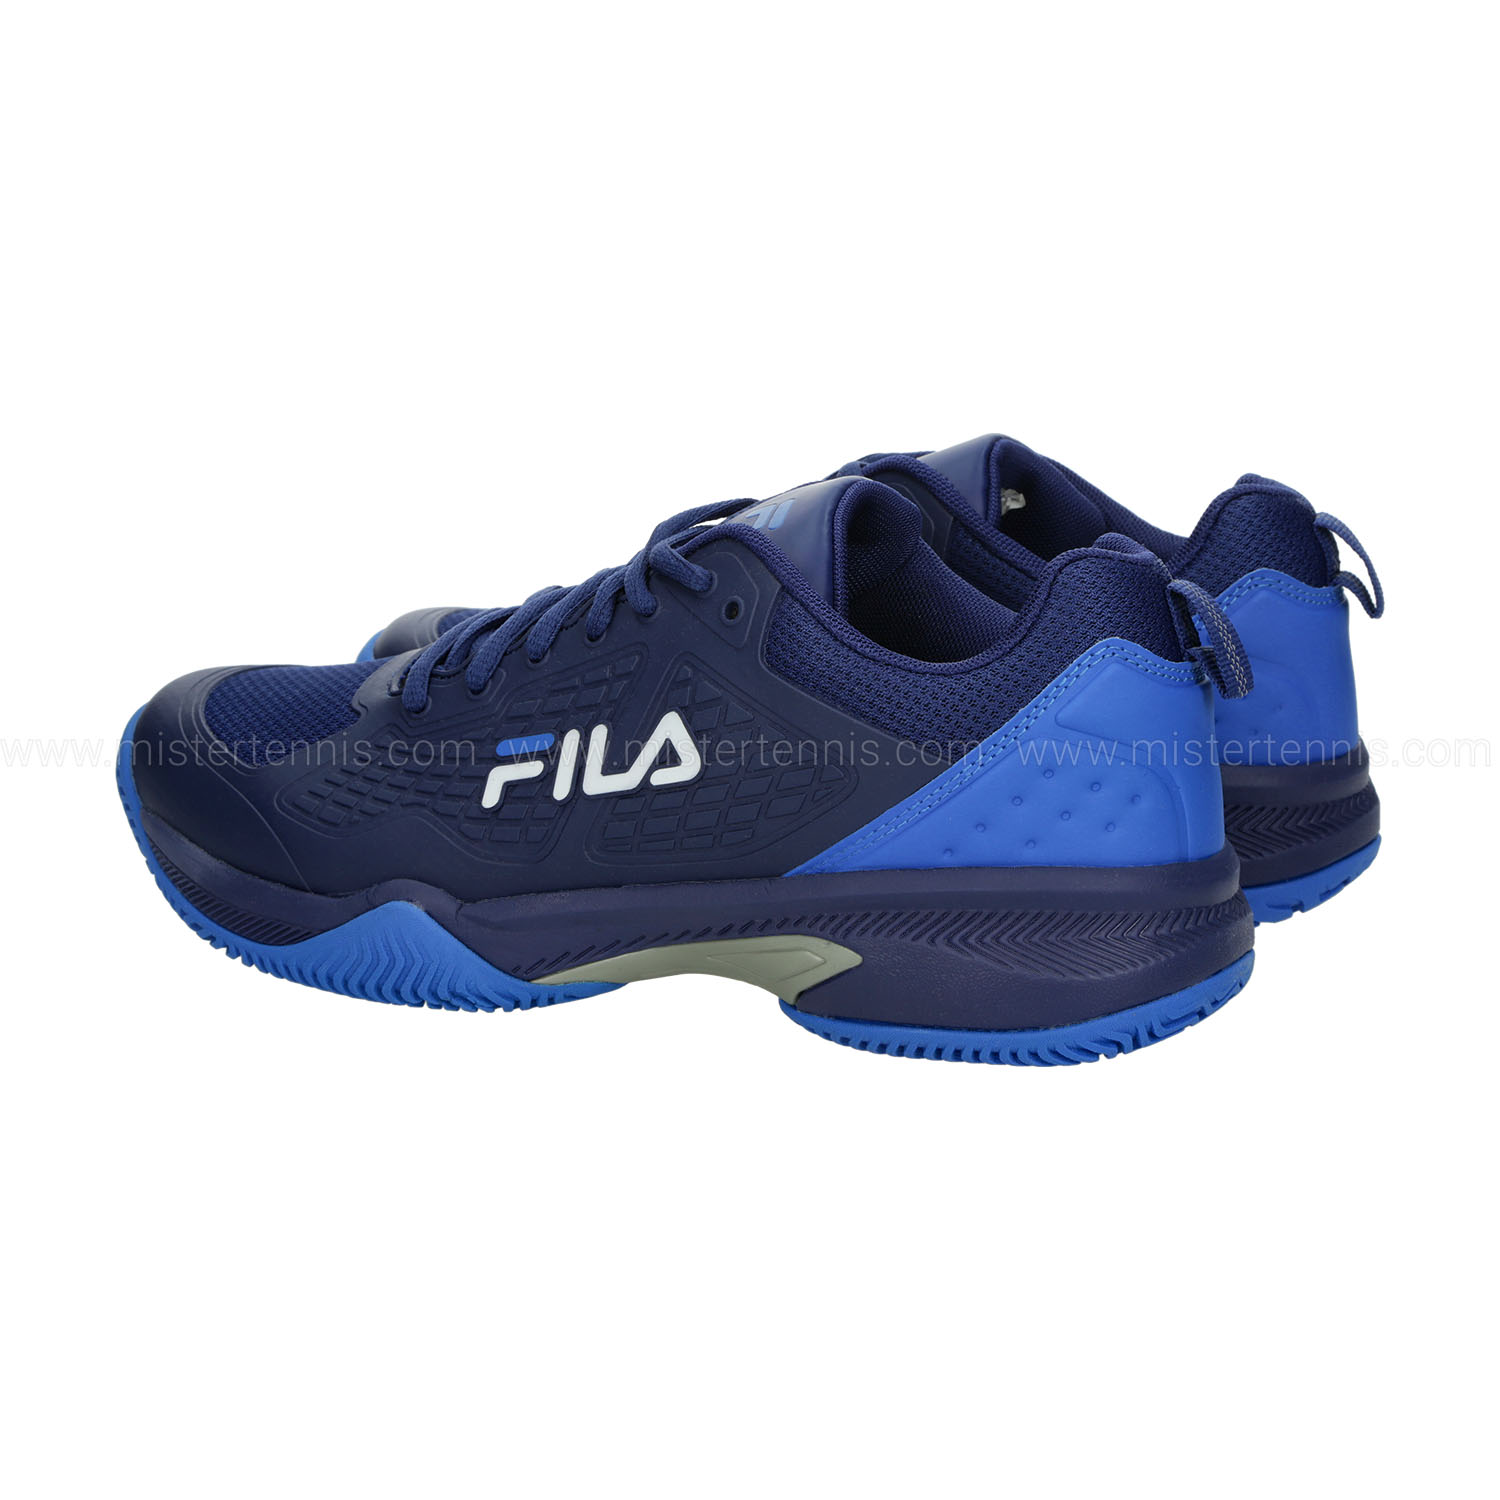 Fila Incontro - Dazzling Blue Comb